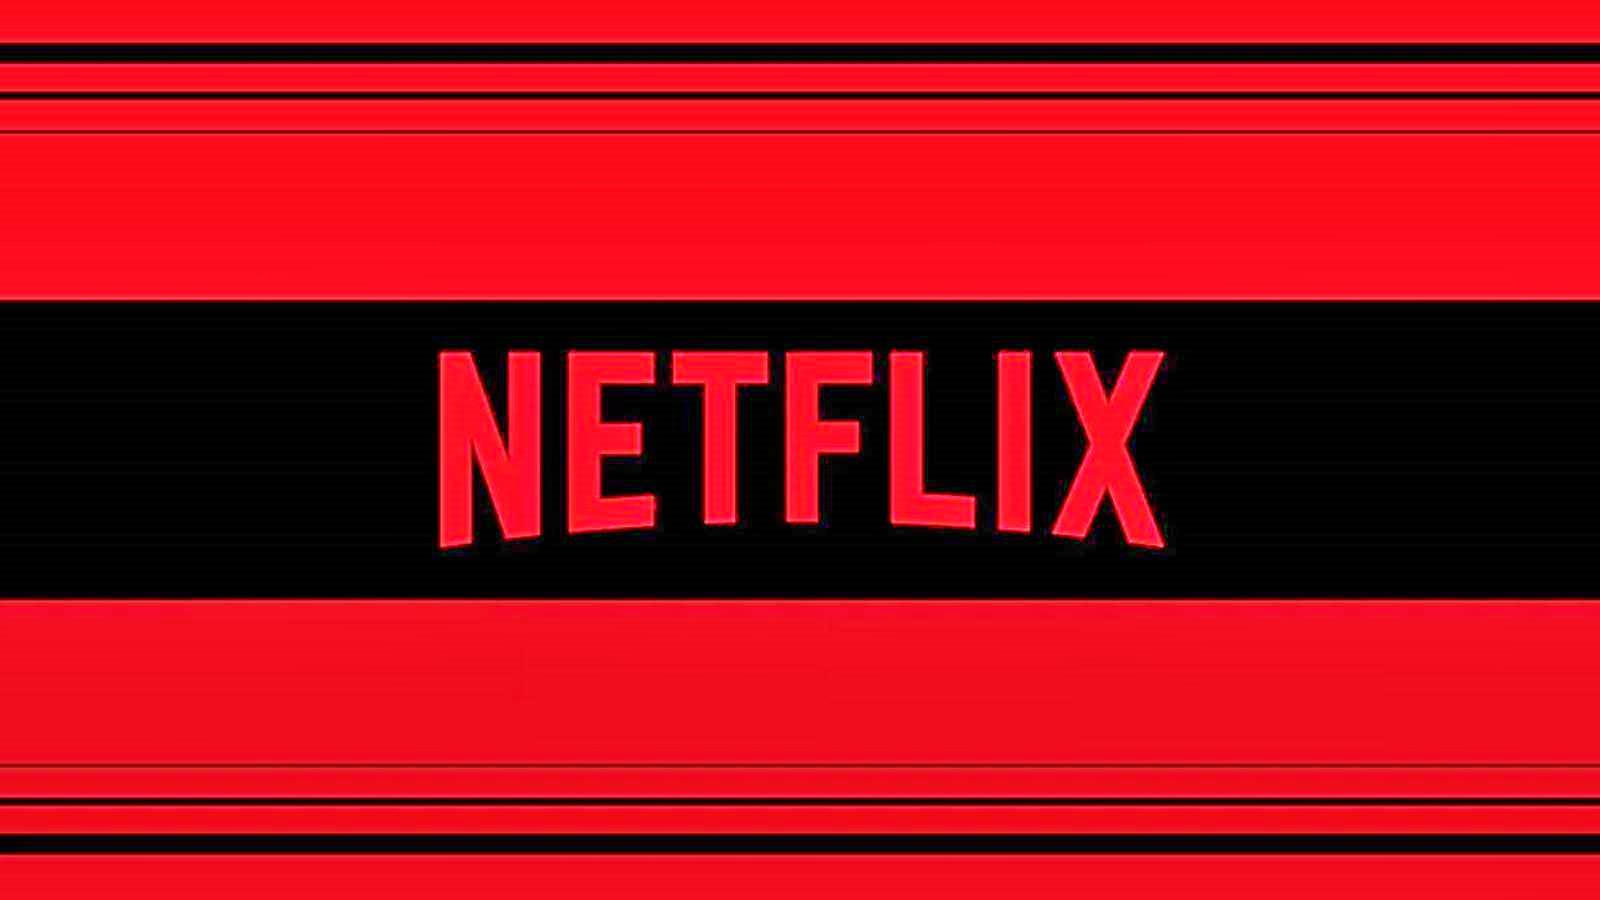 Netflix GRANDES noticias Suscríbete, nuevo lanzamiento